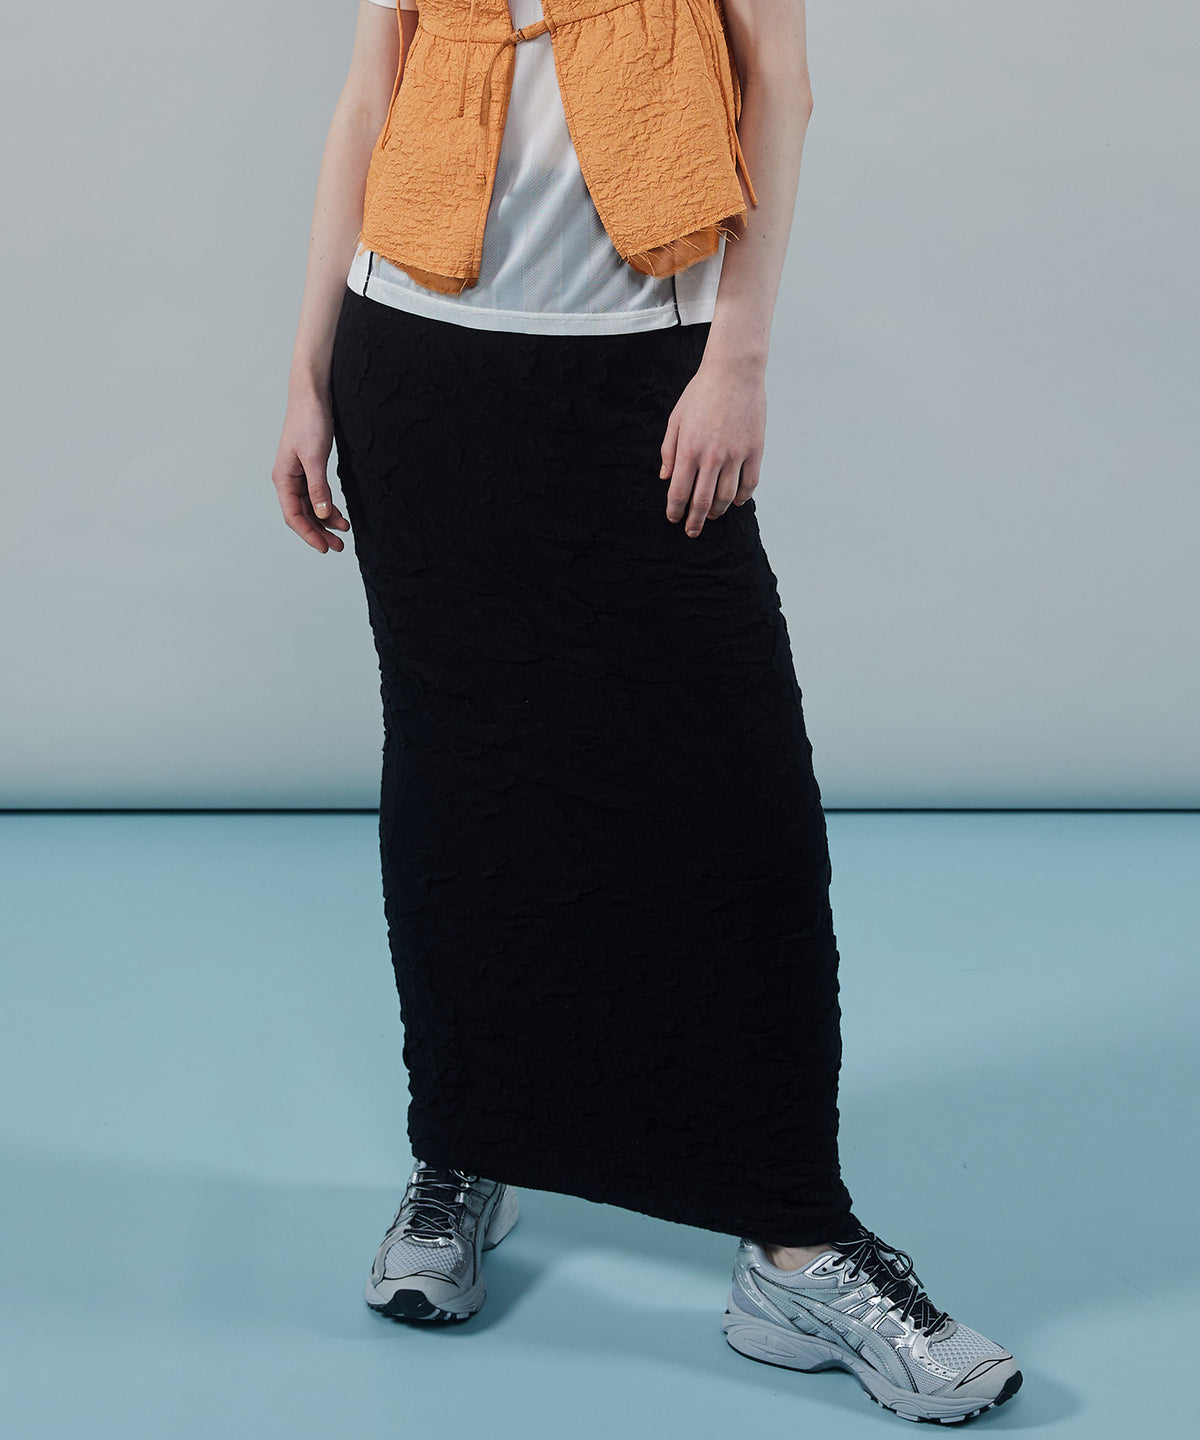 Bumpy Knit Tight Skirt